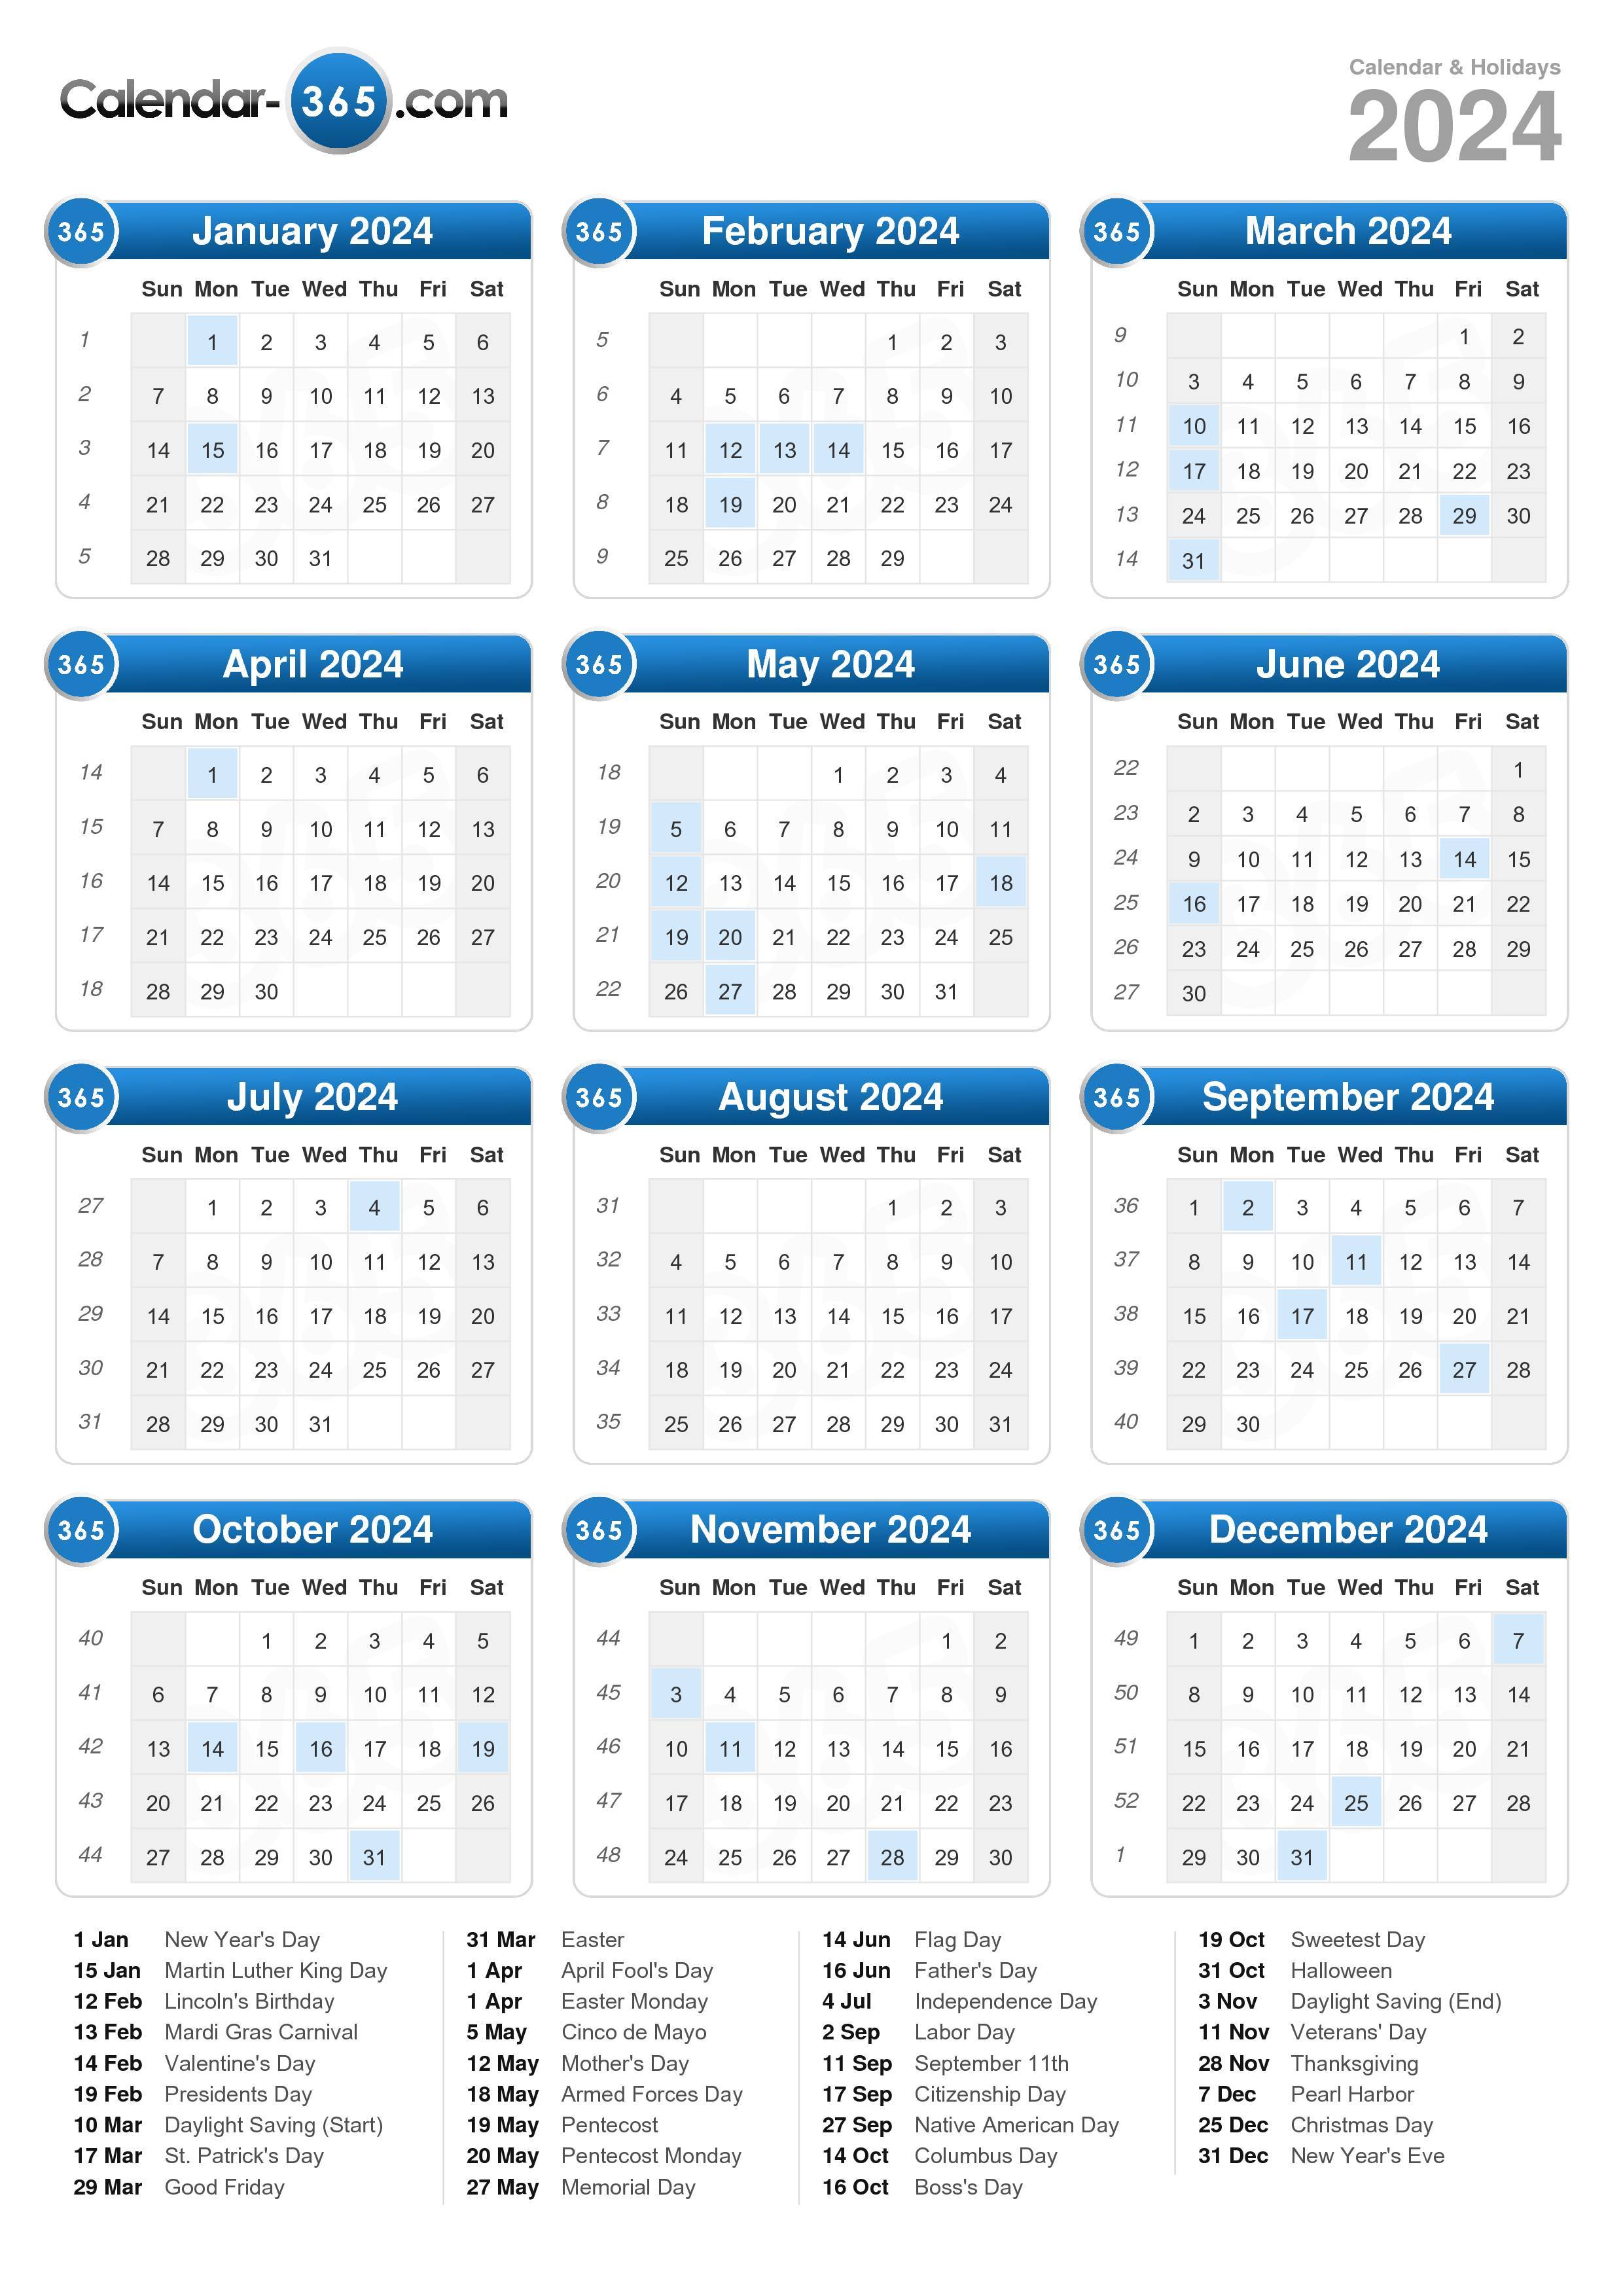 pdf calendar 2024 with federal holidays federal holidays